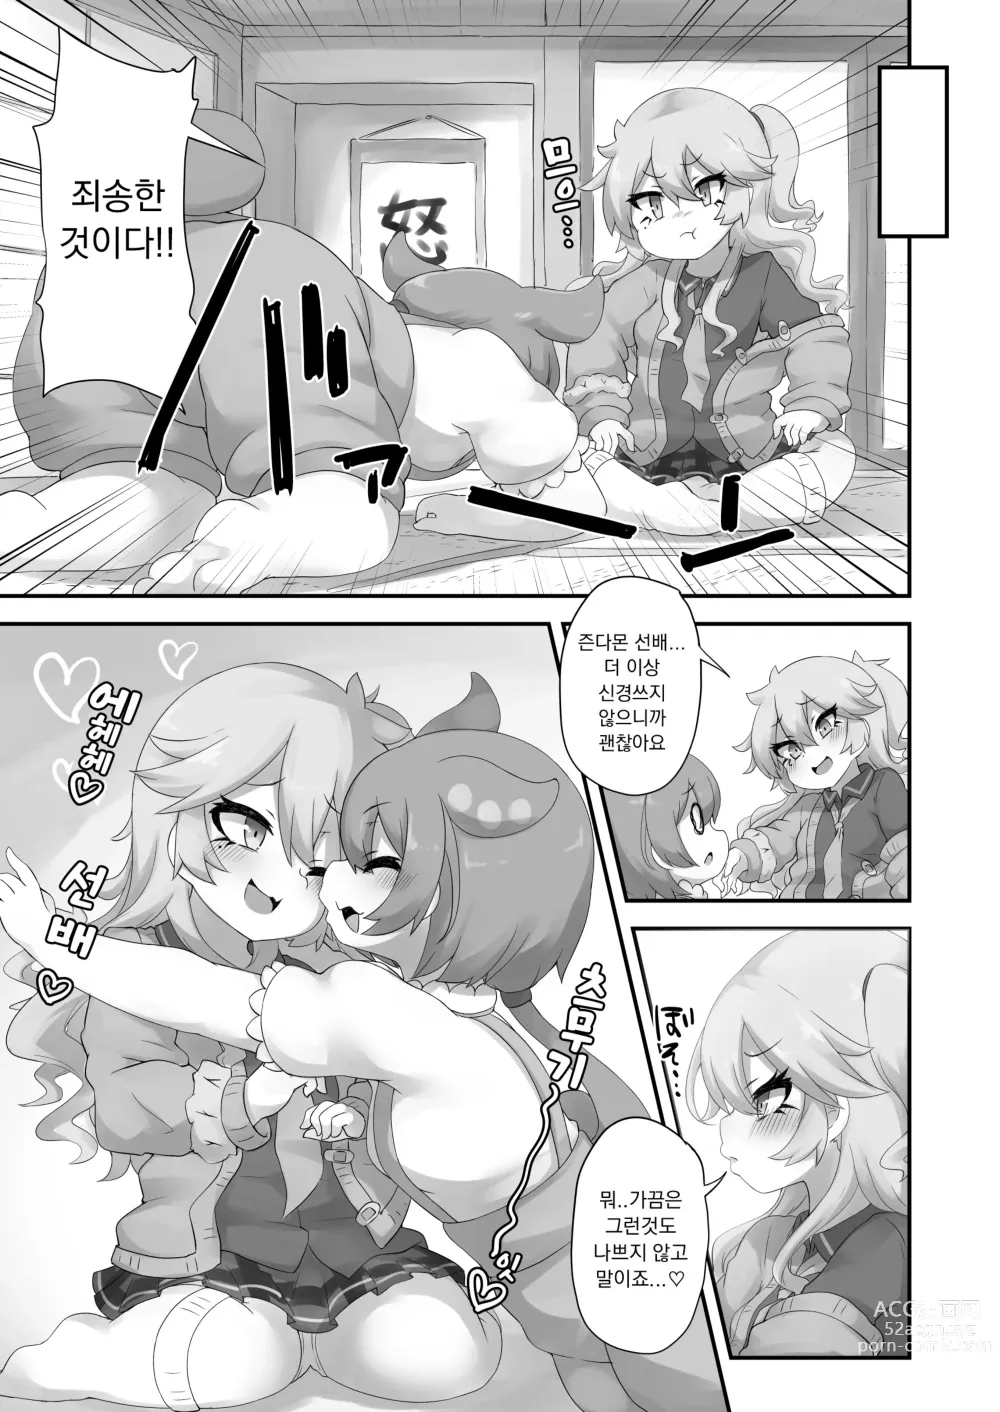 Page 19 of doujinshi 뭔가 생겨난 것이다!?